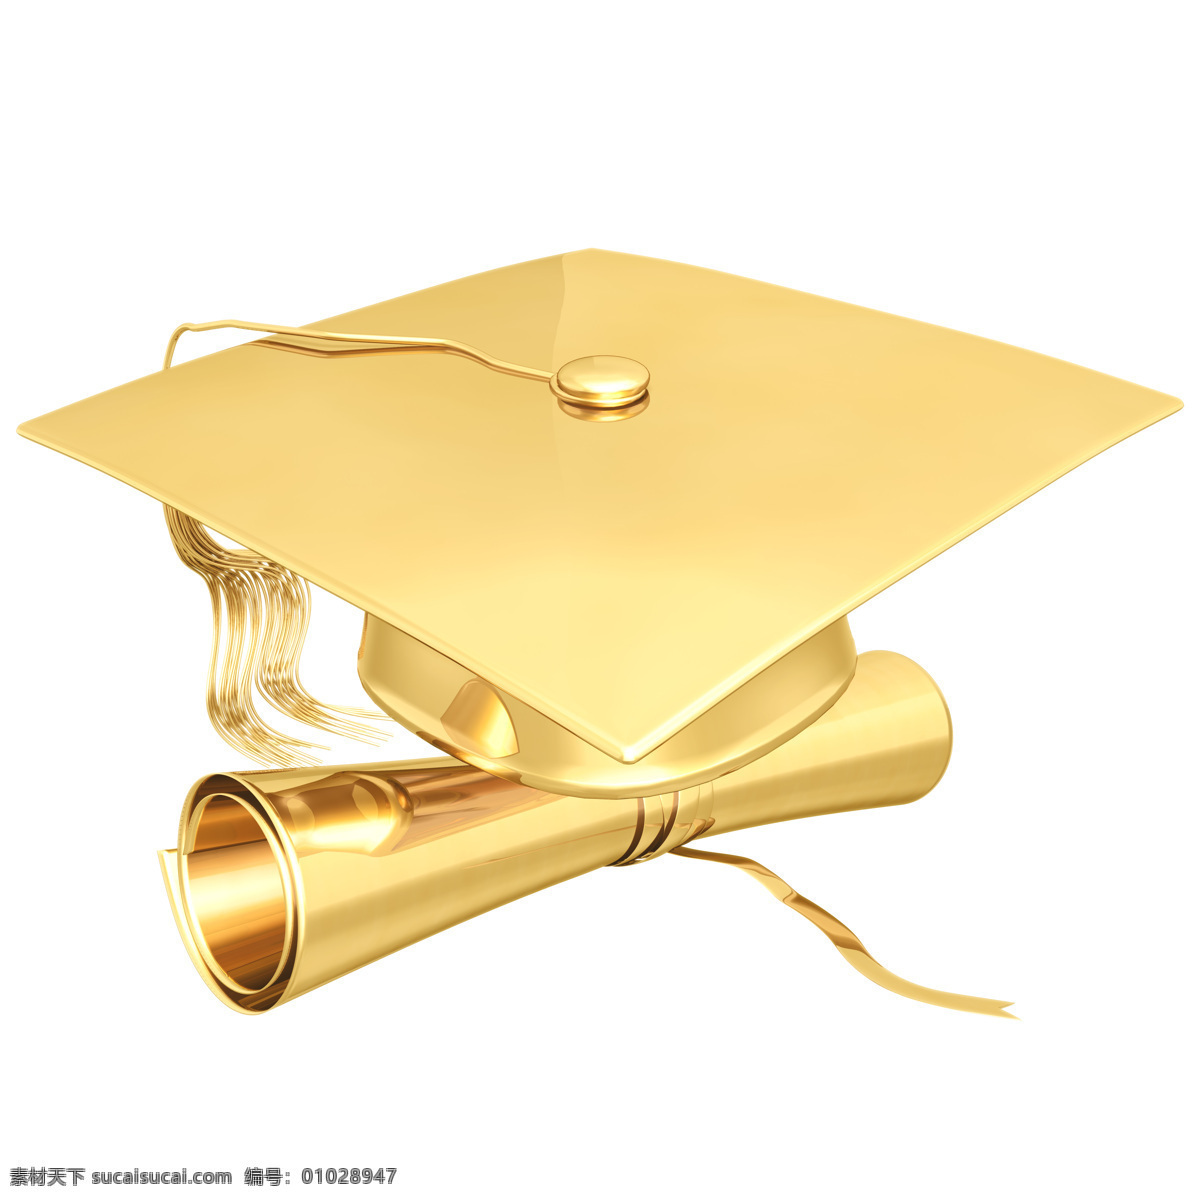 金色 博士帽 证书 金黄色 金黄 帽子 毕业证书 金融素材 金融货币 商务金融